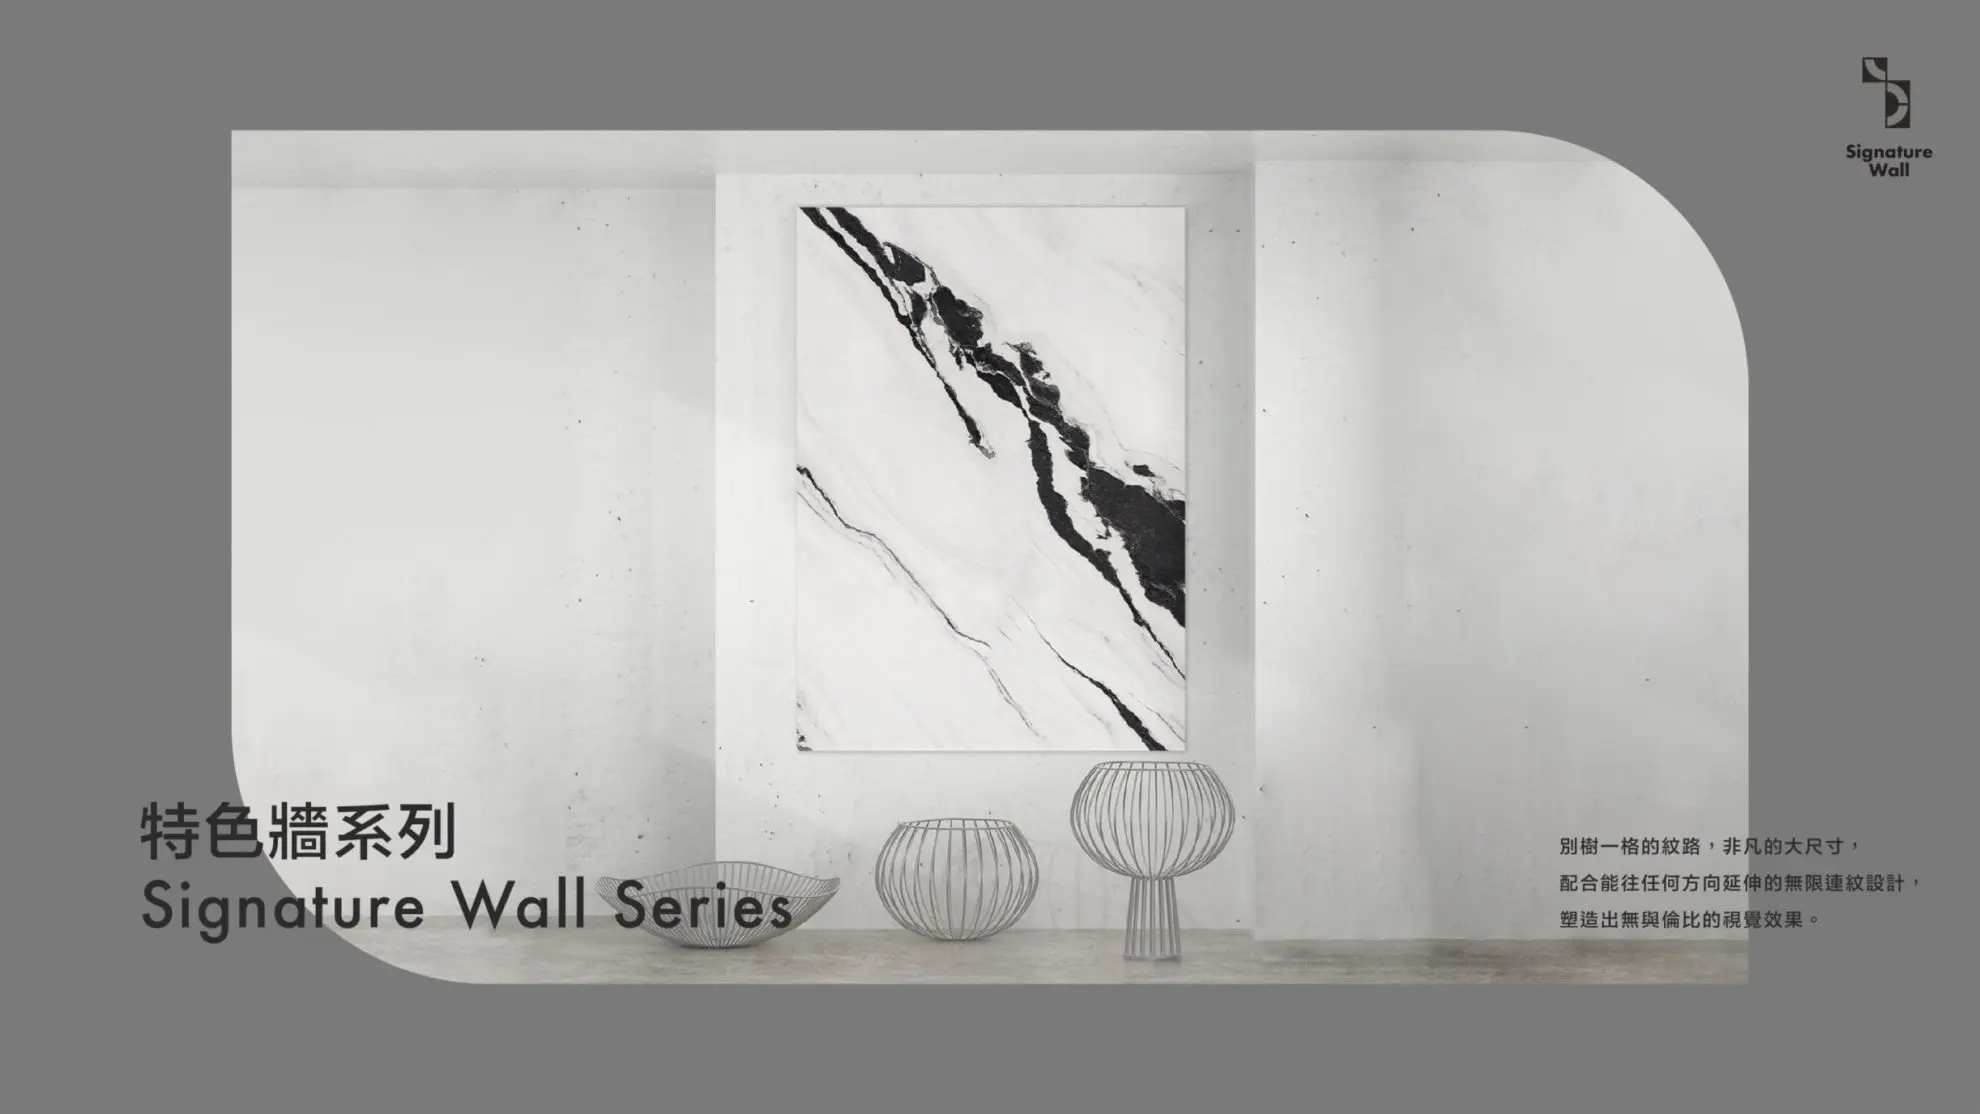 01-亞細亞-瓷磚-岩板-水磨石-特色牆系列